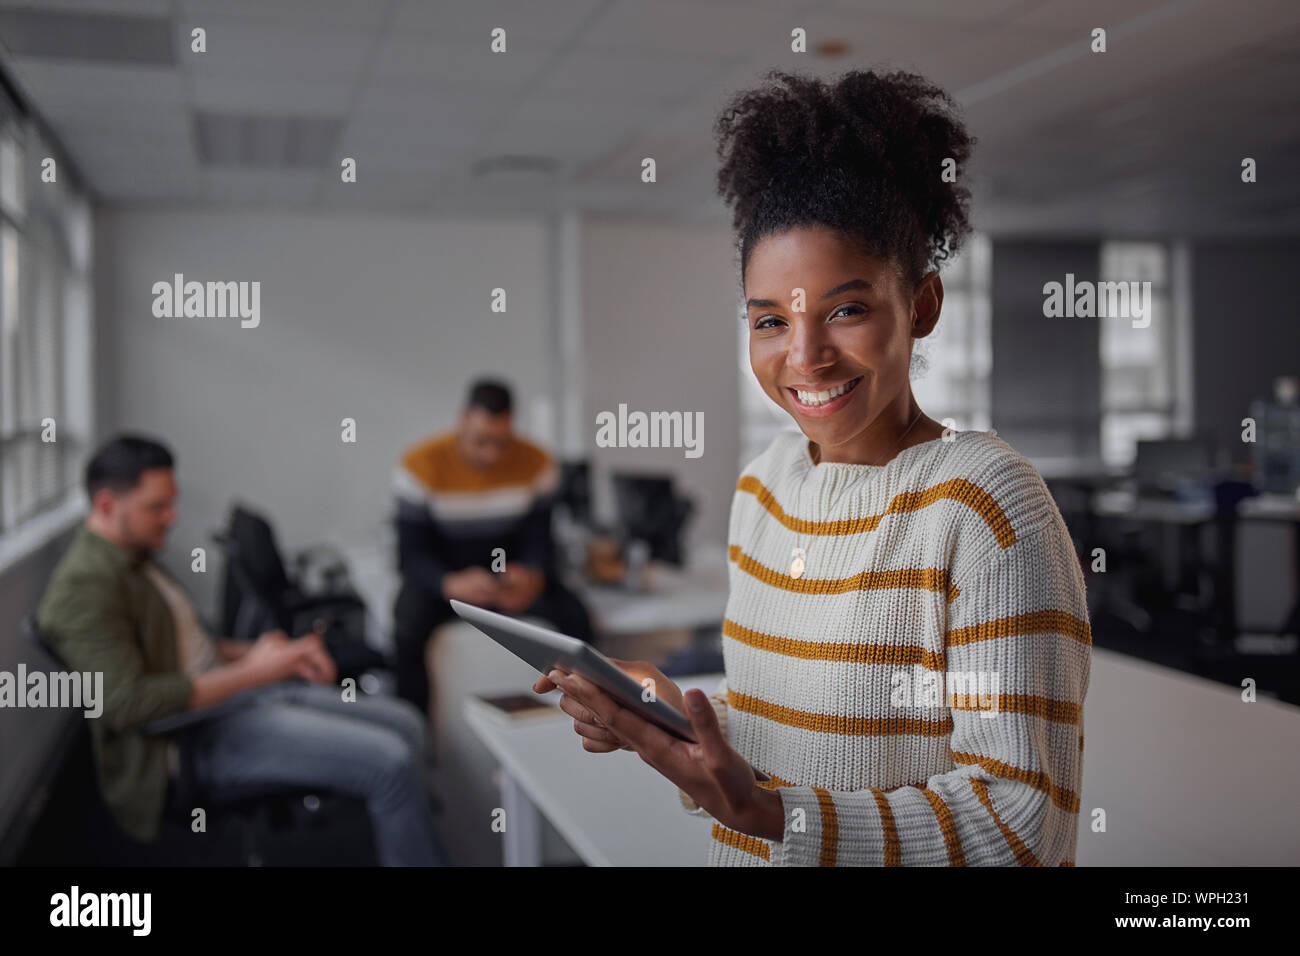 Cheerful young African American Woman in casual wear holding digital tablet souriant et à la recherche d'appareil alors que ses collègues de la communication Banque D'Images